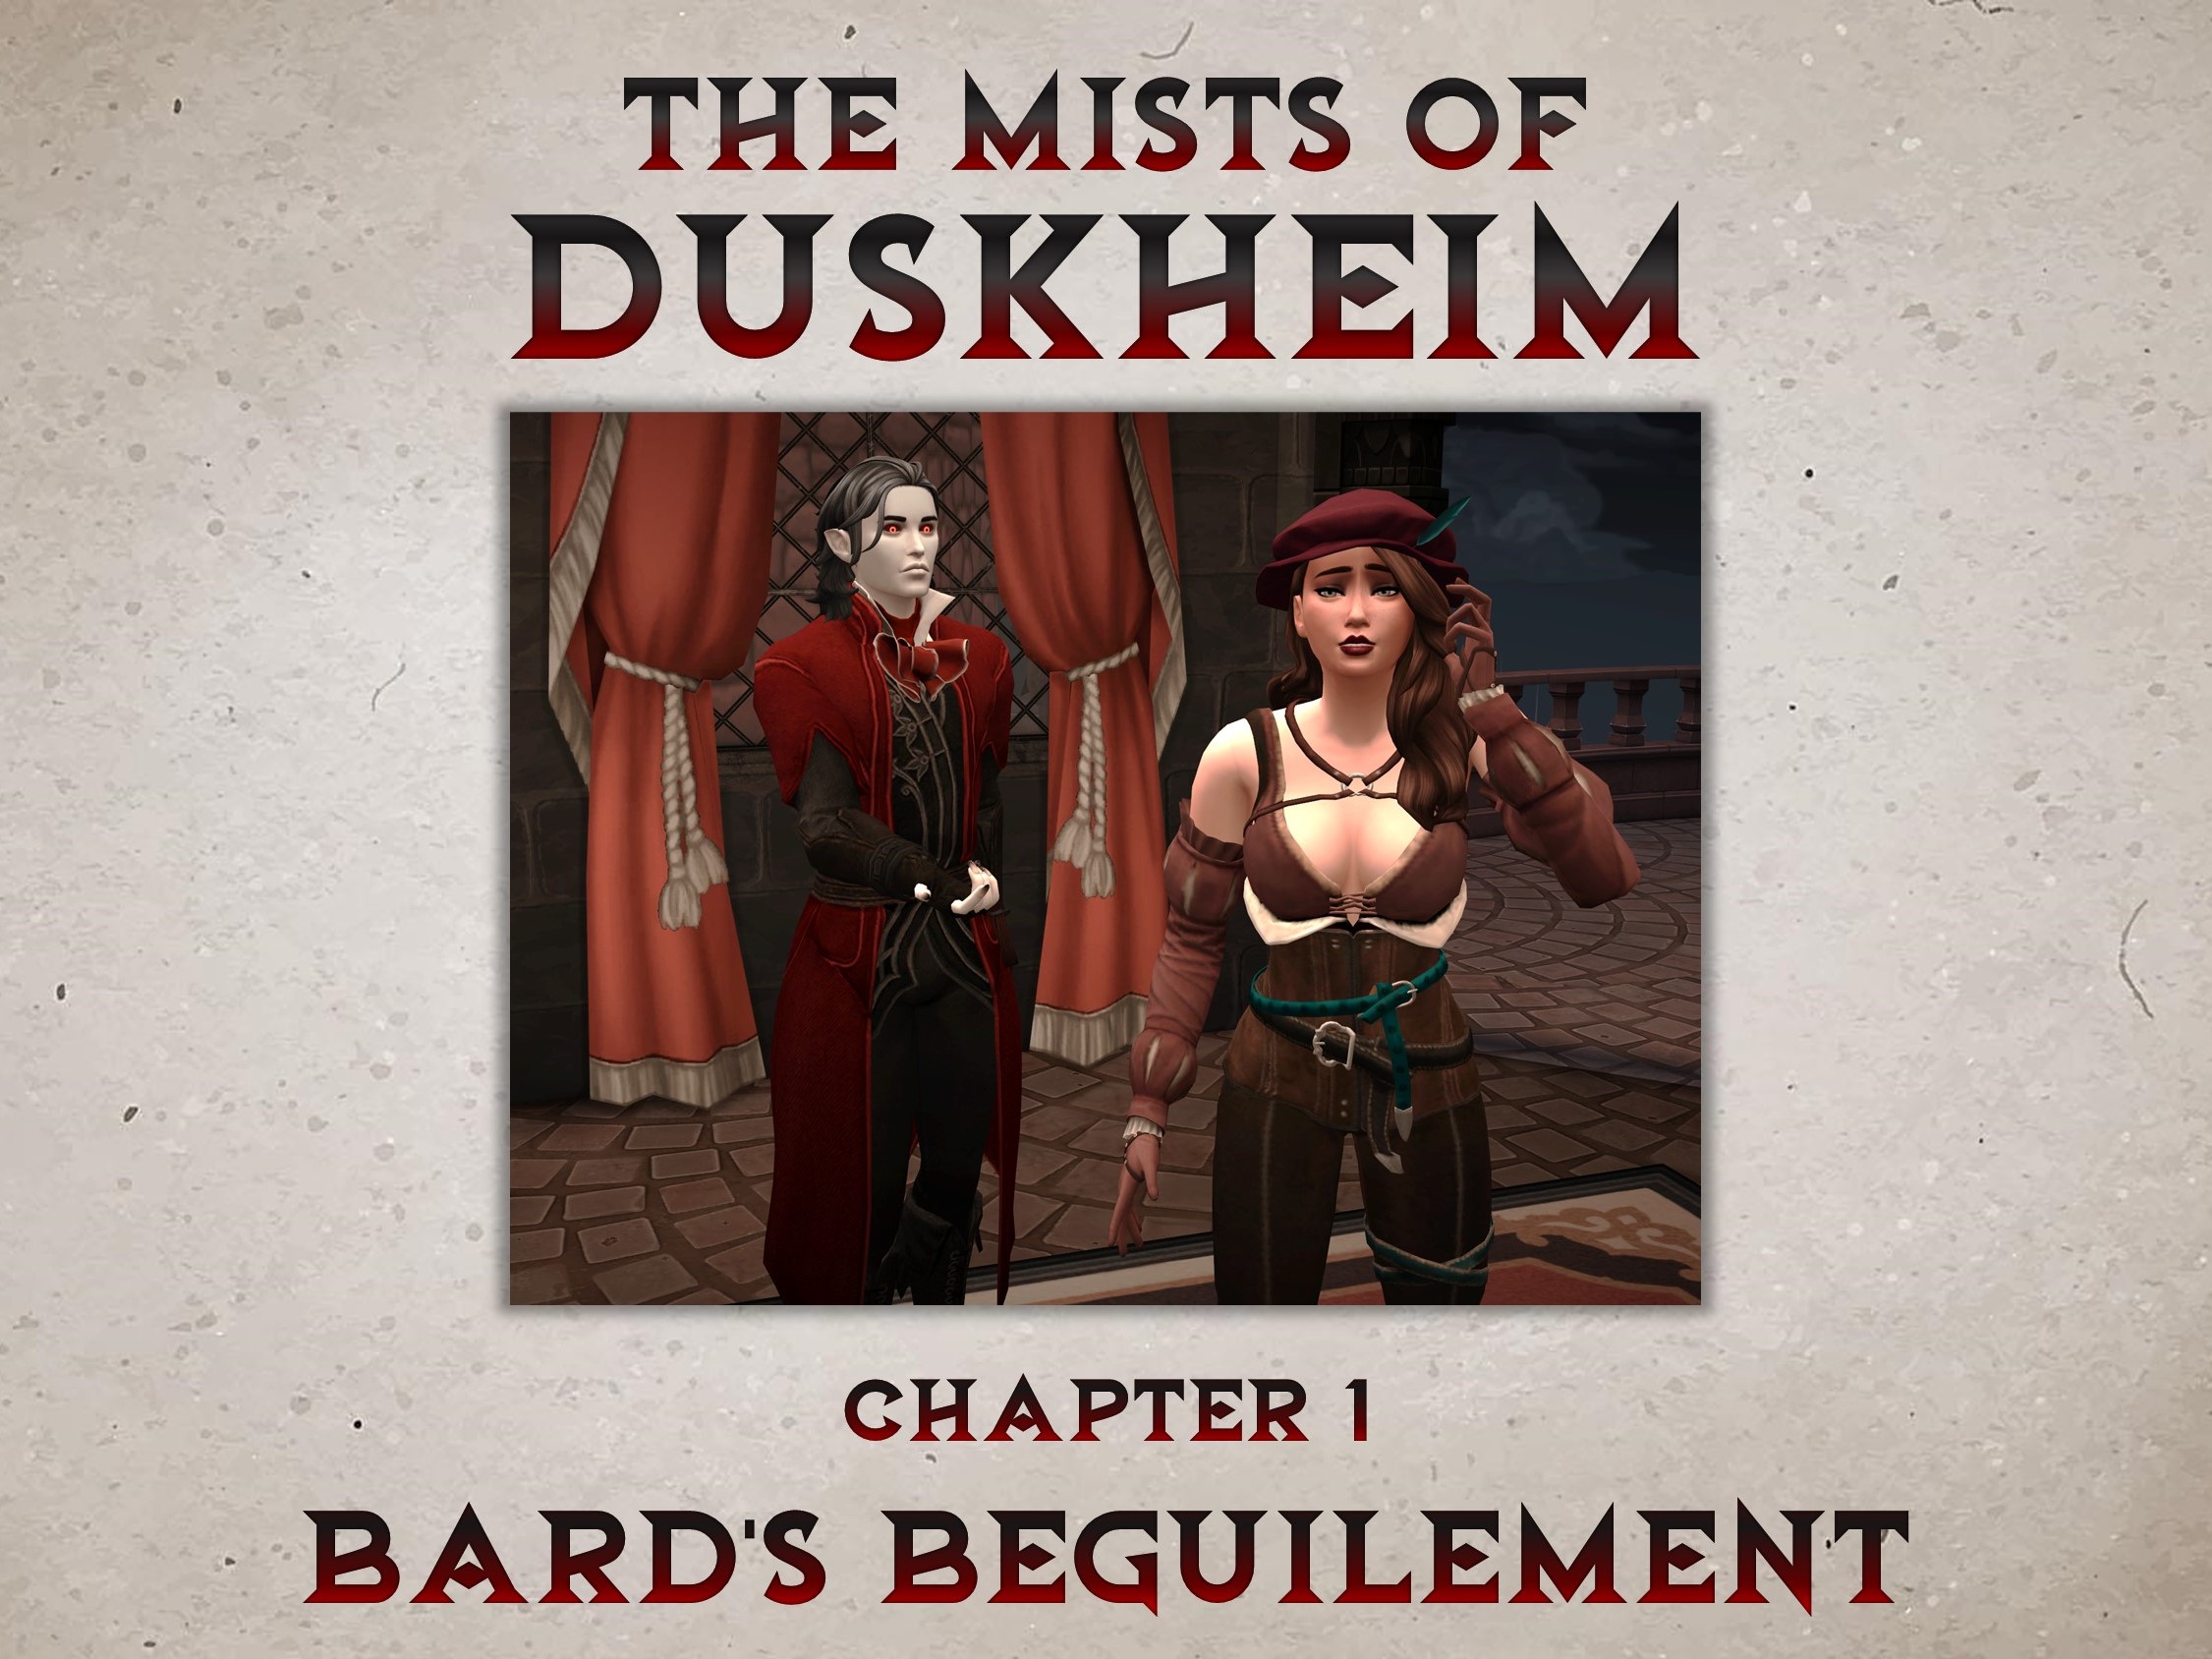 Ths Mists of Duskheim: Chapter 1 - Bard's Beguilement